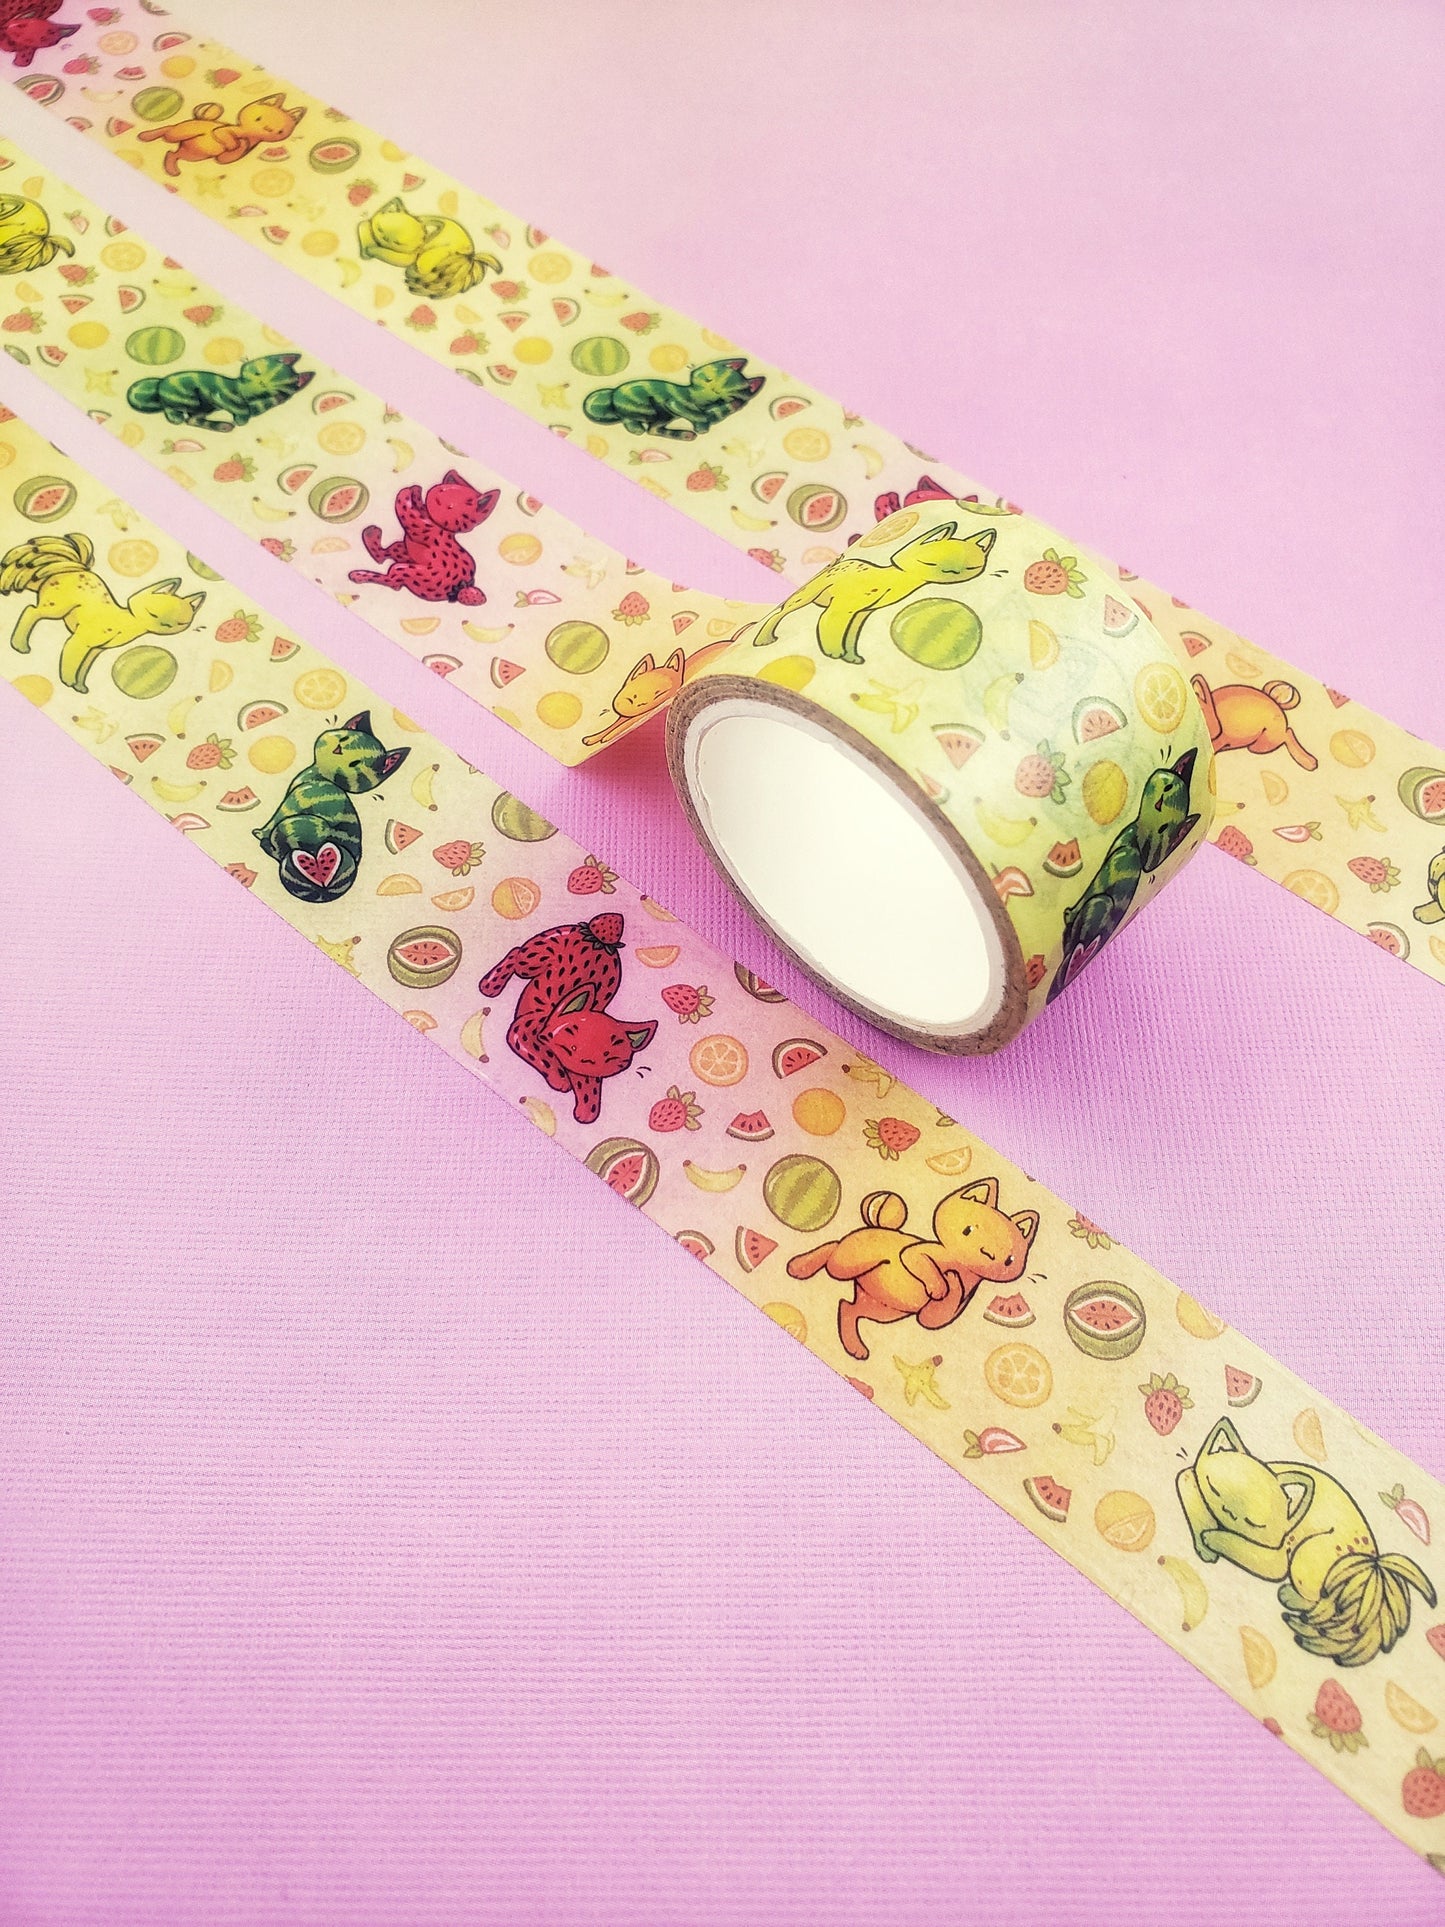 Feline Fruity - Stationary Washi Tape